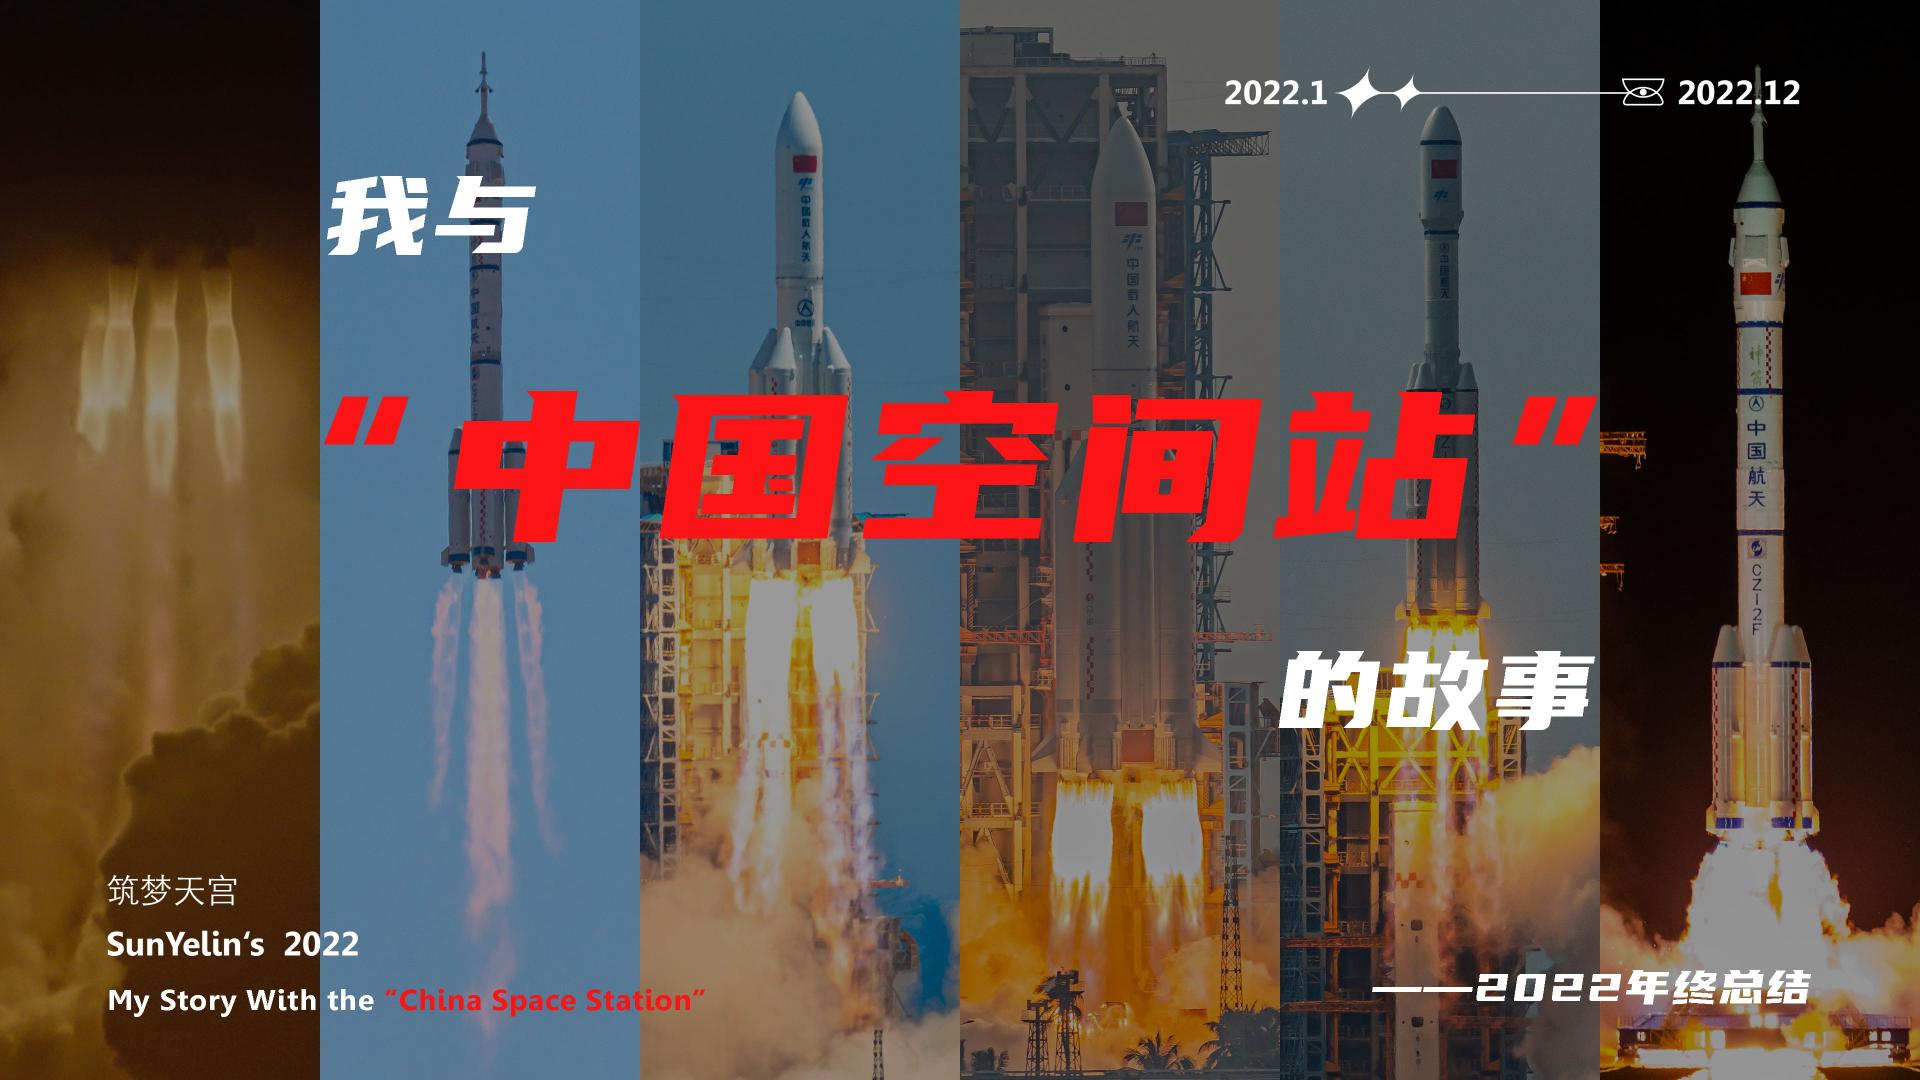 《我与“中国空间站”的故事》——2022年终总结